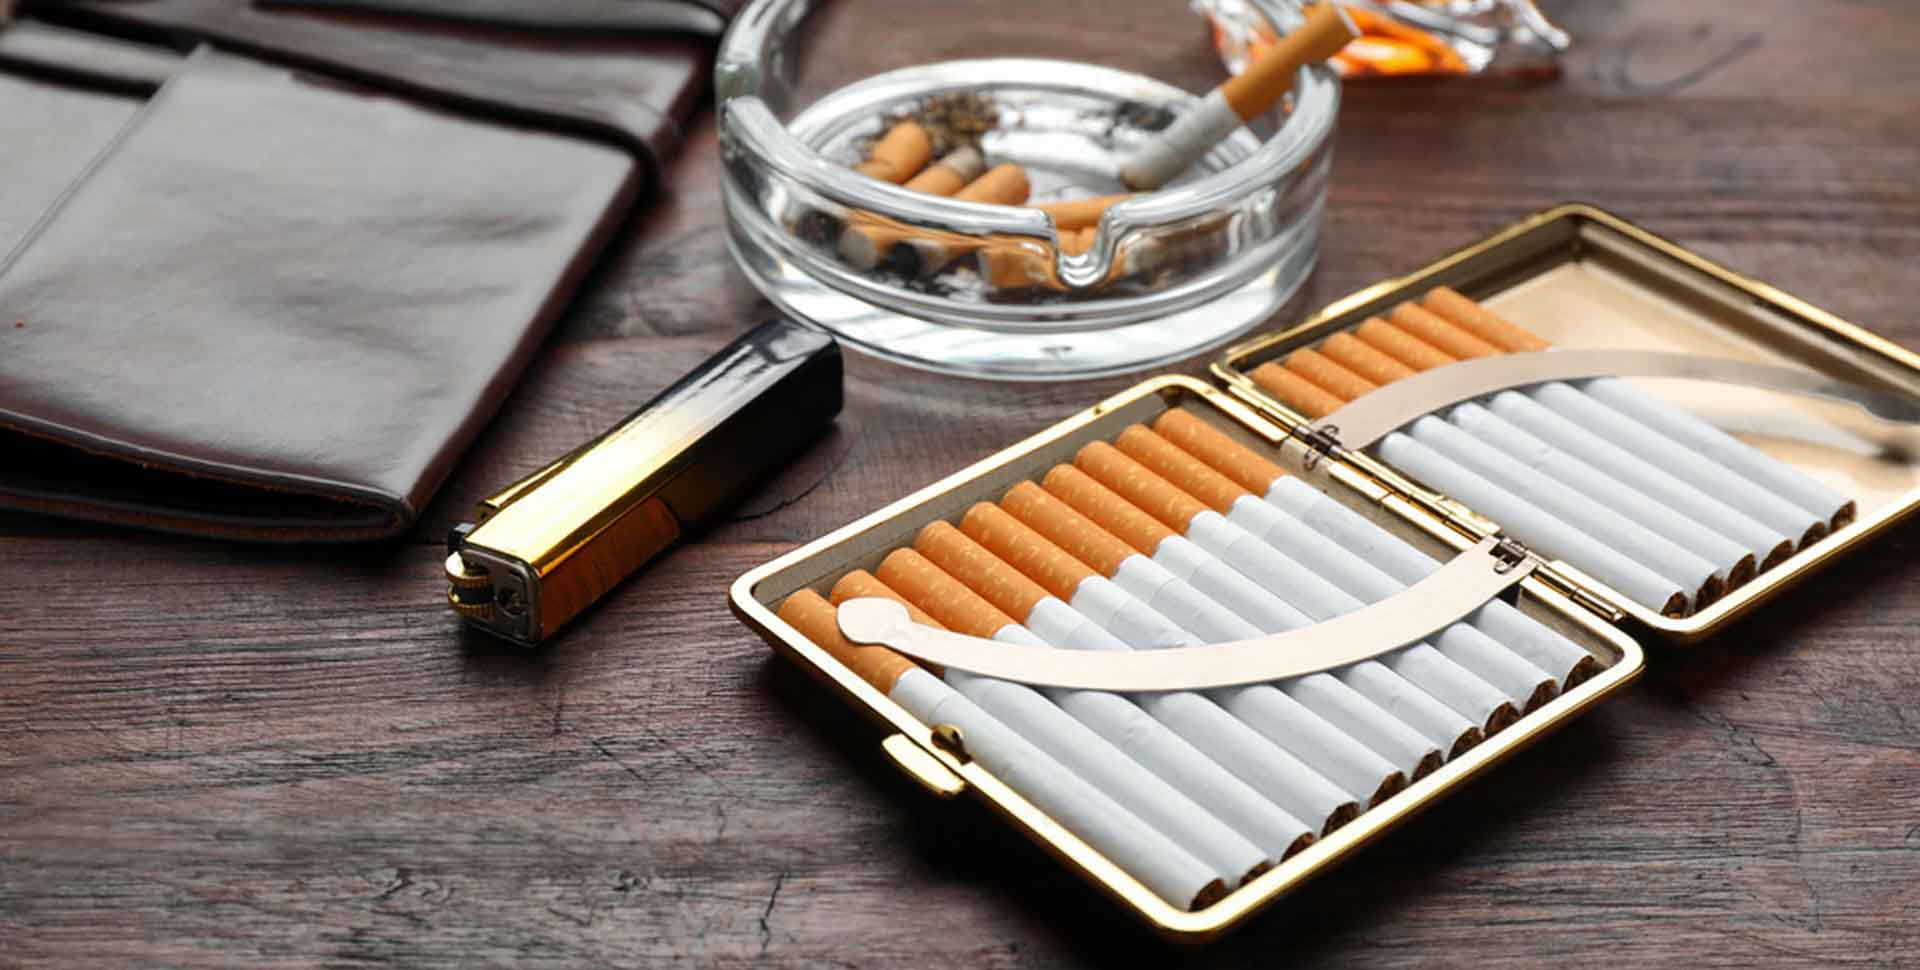 Tabatierka plná cigariet, priehľadný sklenený popolník, kožené puzdro na tabak, zapaľovač